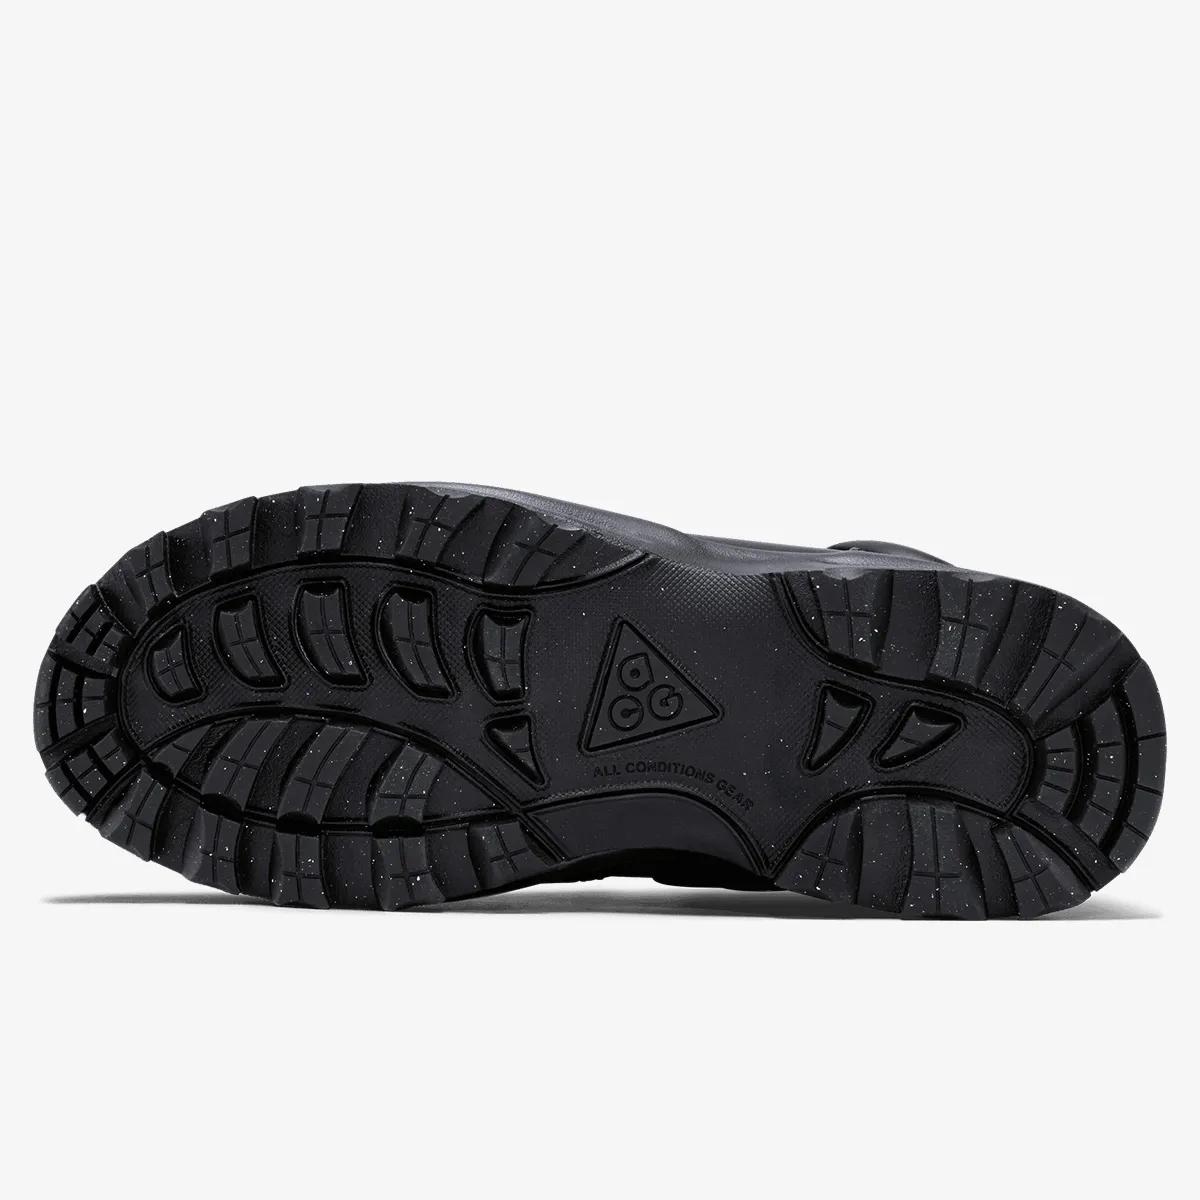 Nike Pantofi Manoa Leather 